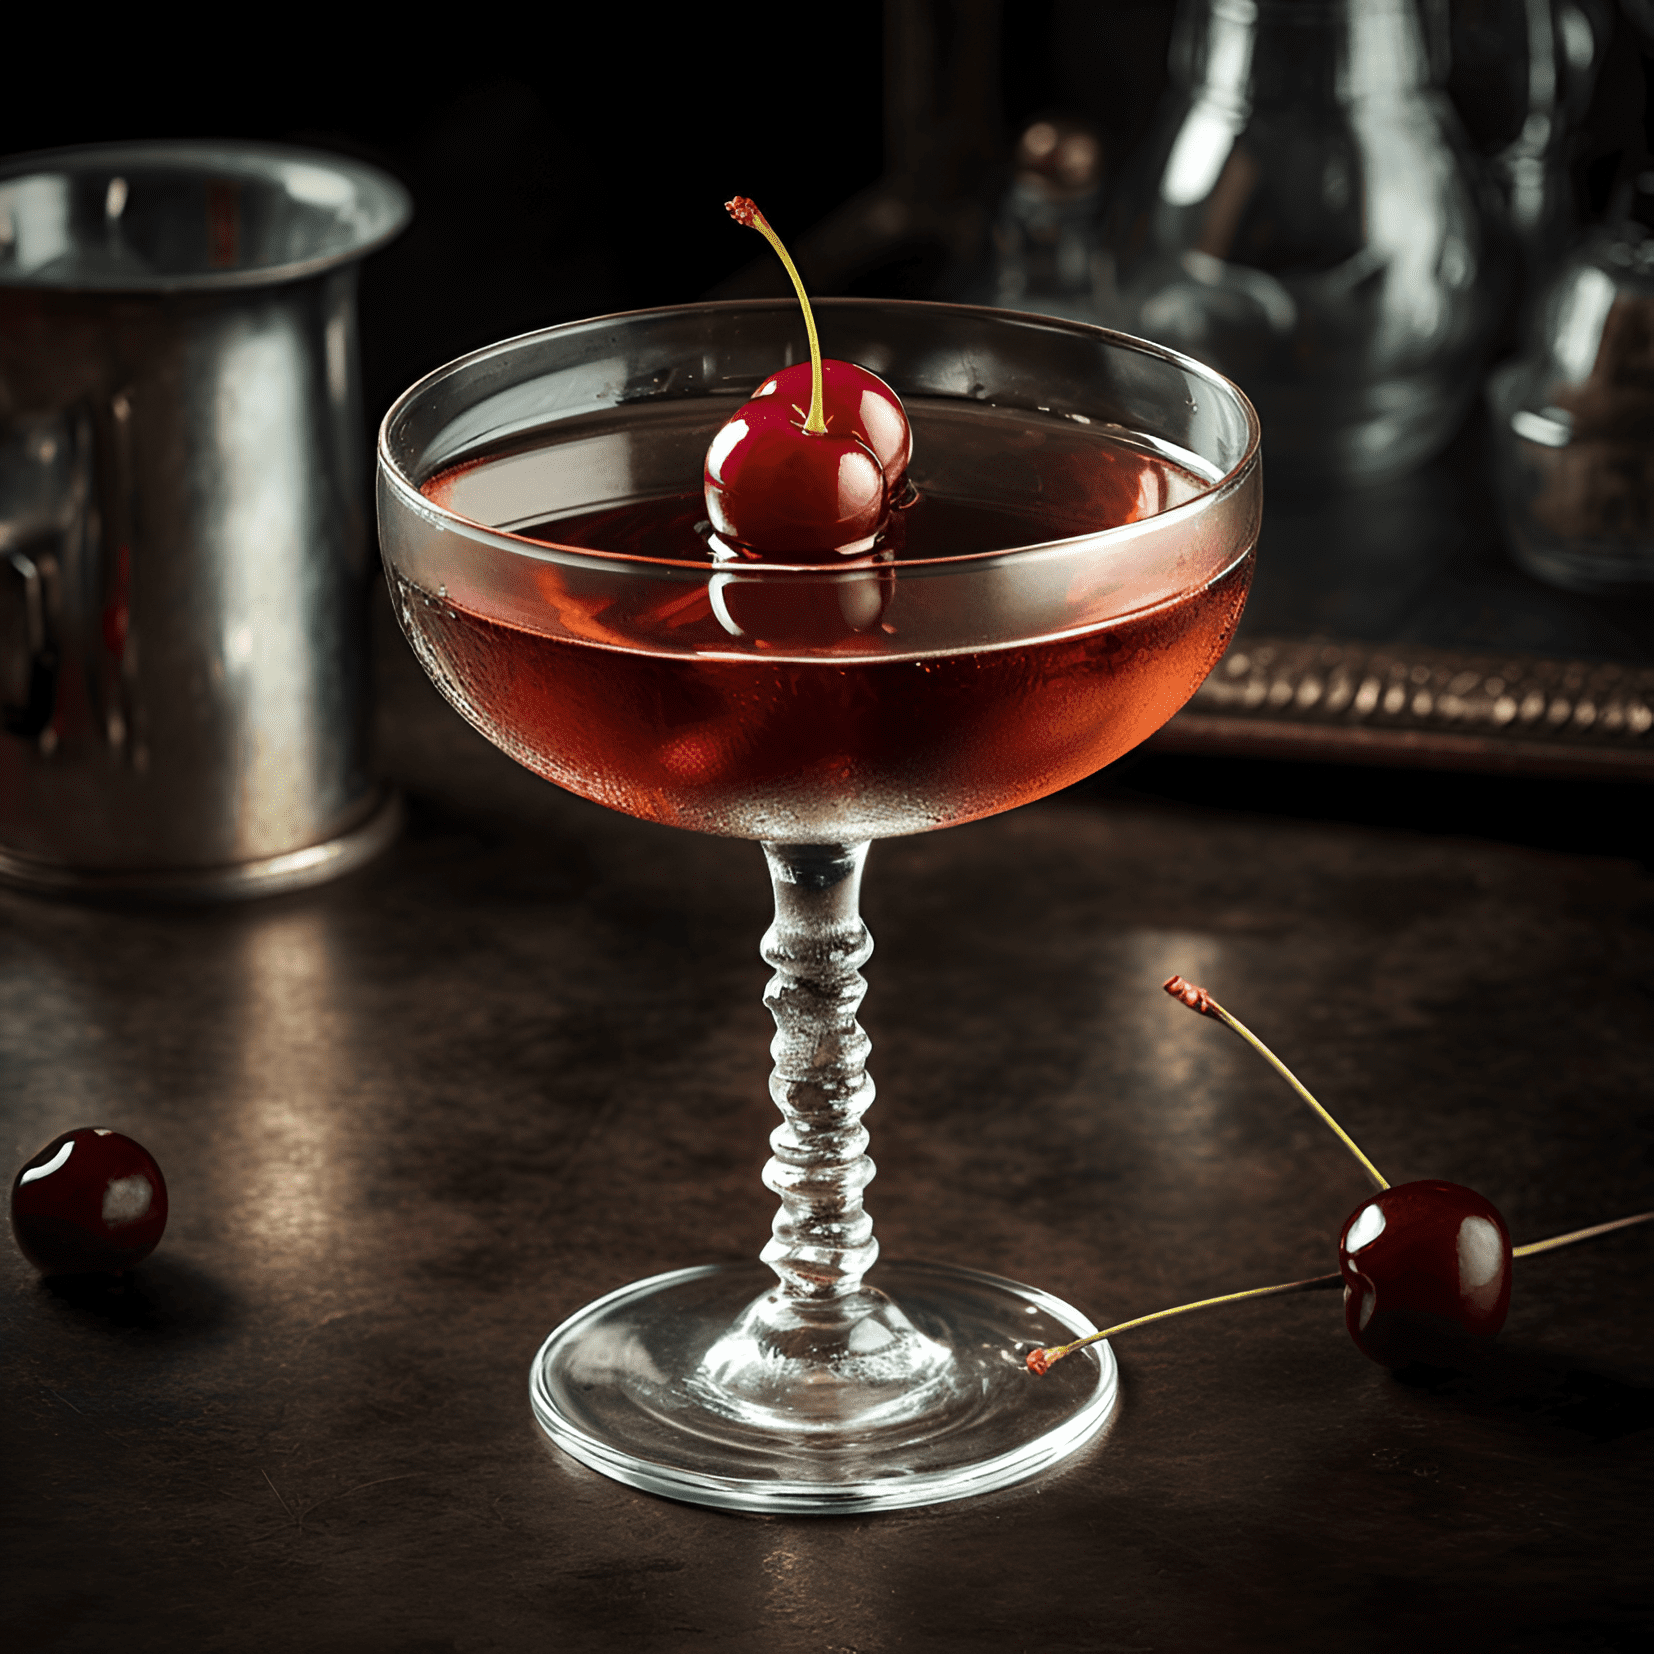 El cóctel Midnight ofrece una armoniosa mezcla de sabores dulces, ácidos y ligeramente amargos. Tiene una textura rica y aterciopelada, con una sensación cálida del alcohol. El sabor es complejo, pero bien equilibrado, lo que lo convierte en una bebida deliciosa e intrigante.